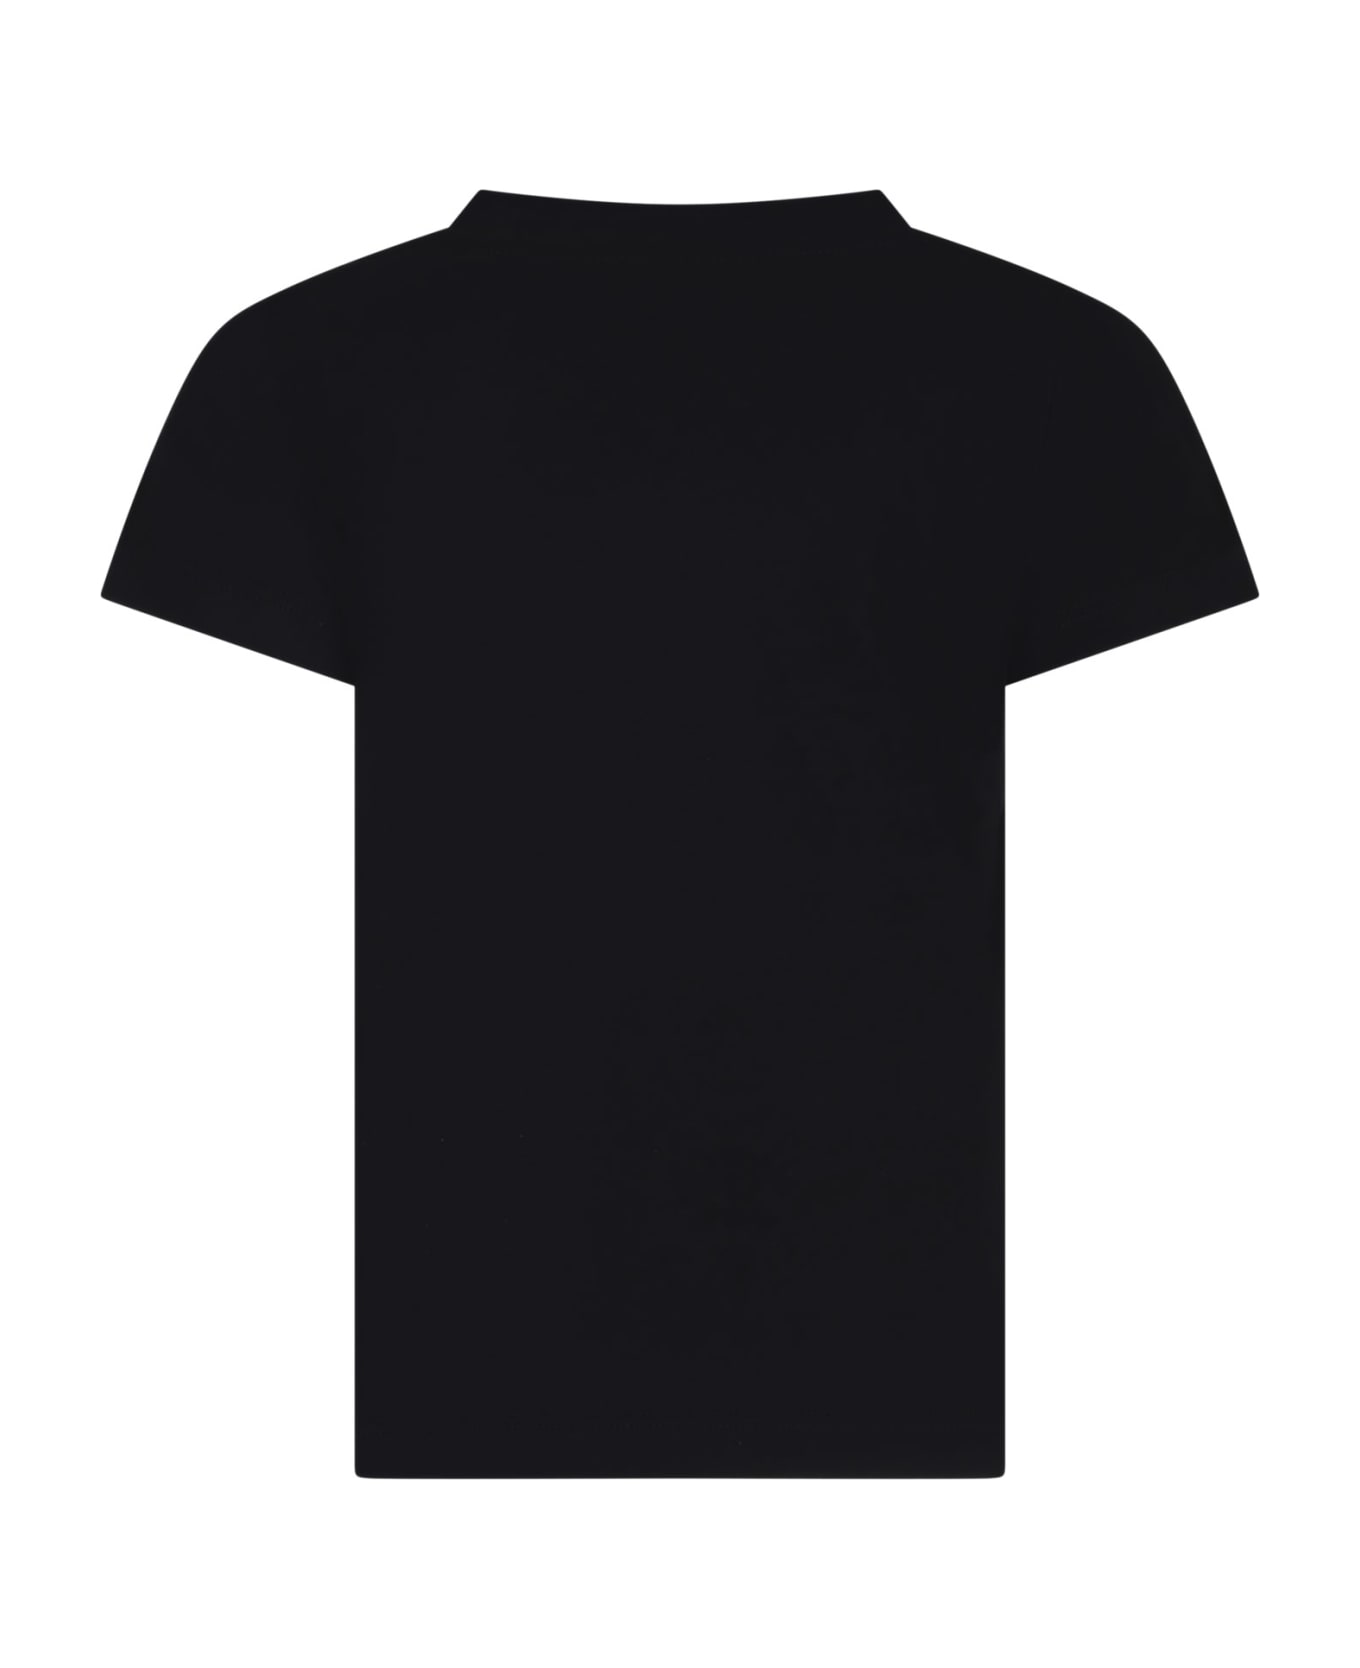 Versace Black T-shirt For Girl With Medusa - Black